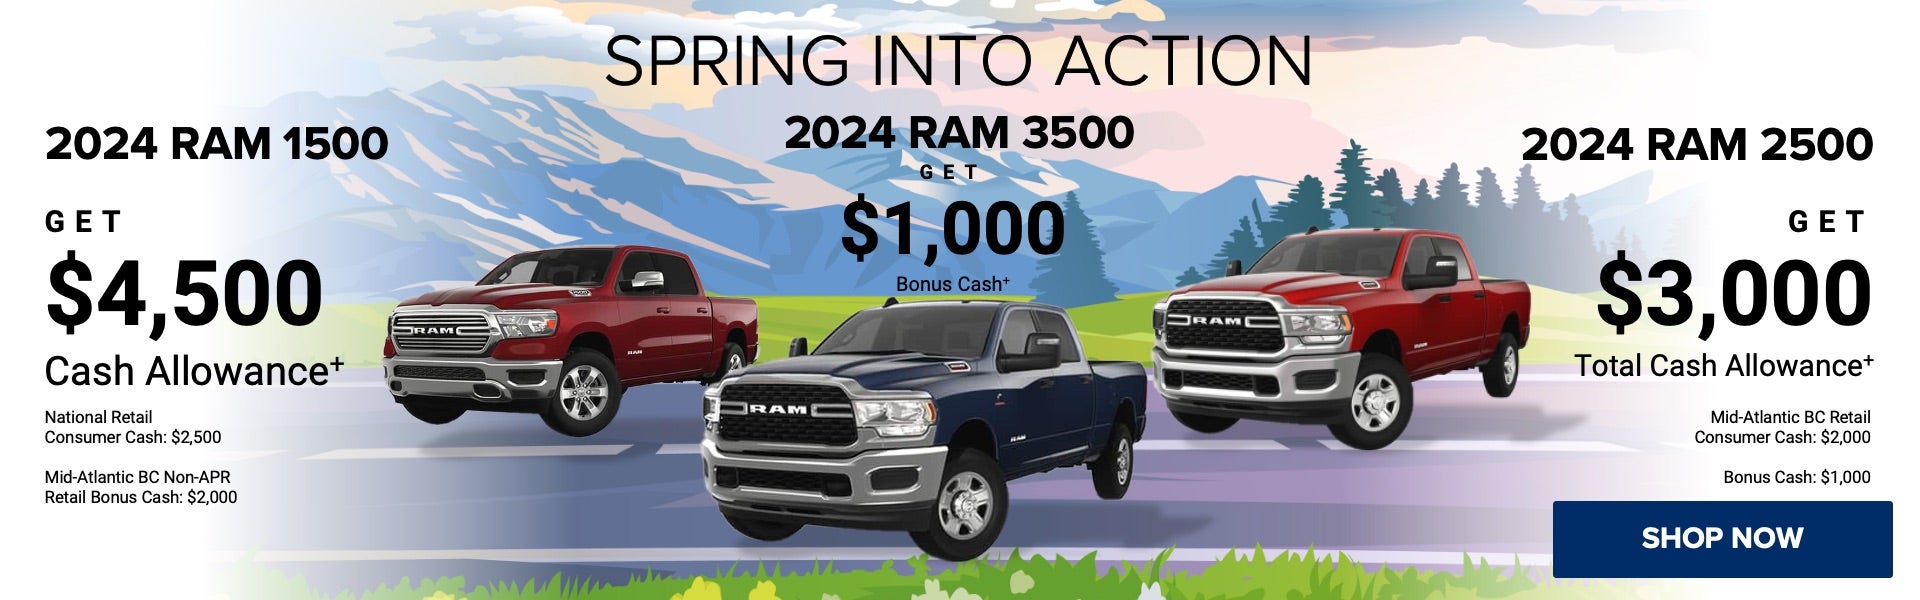 2024 RAM 1500, 2500 & 3500